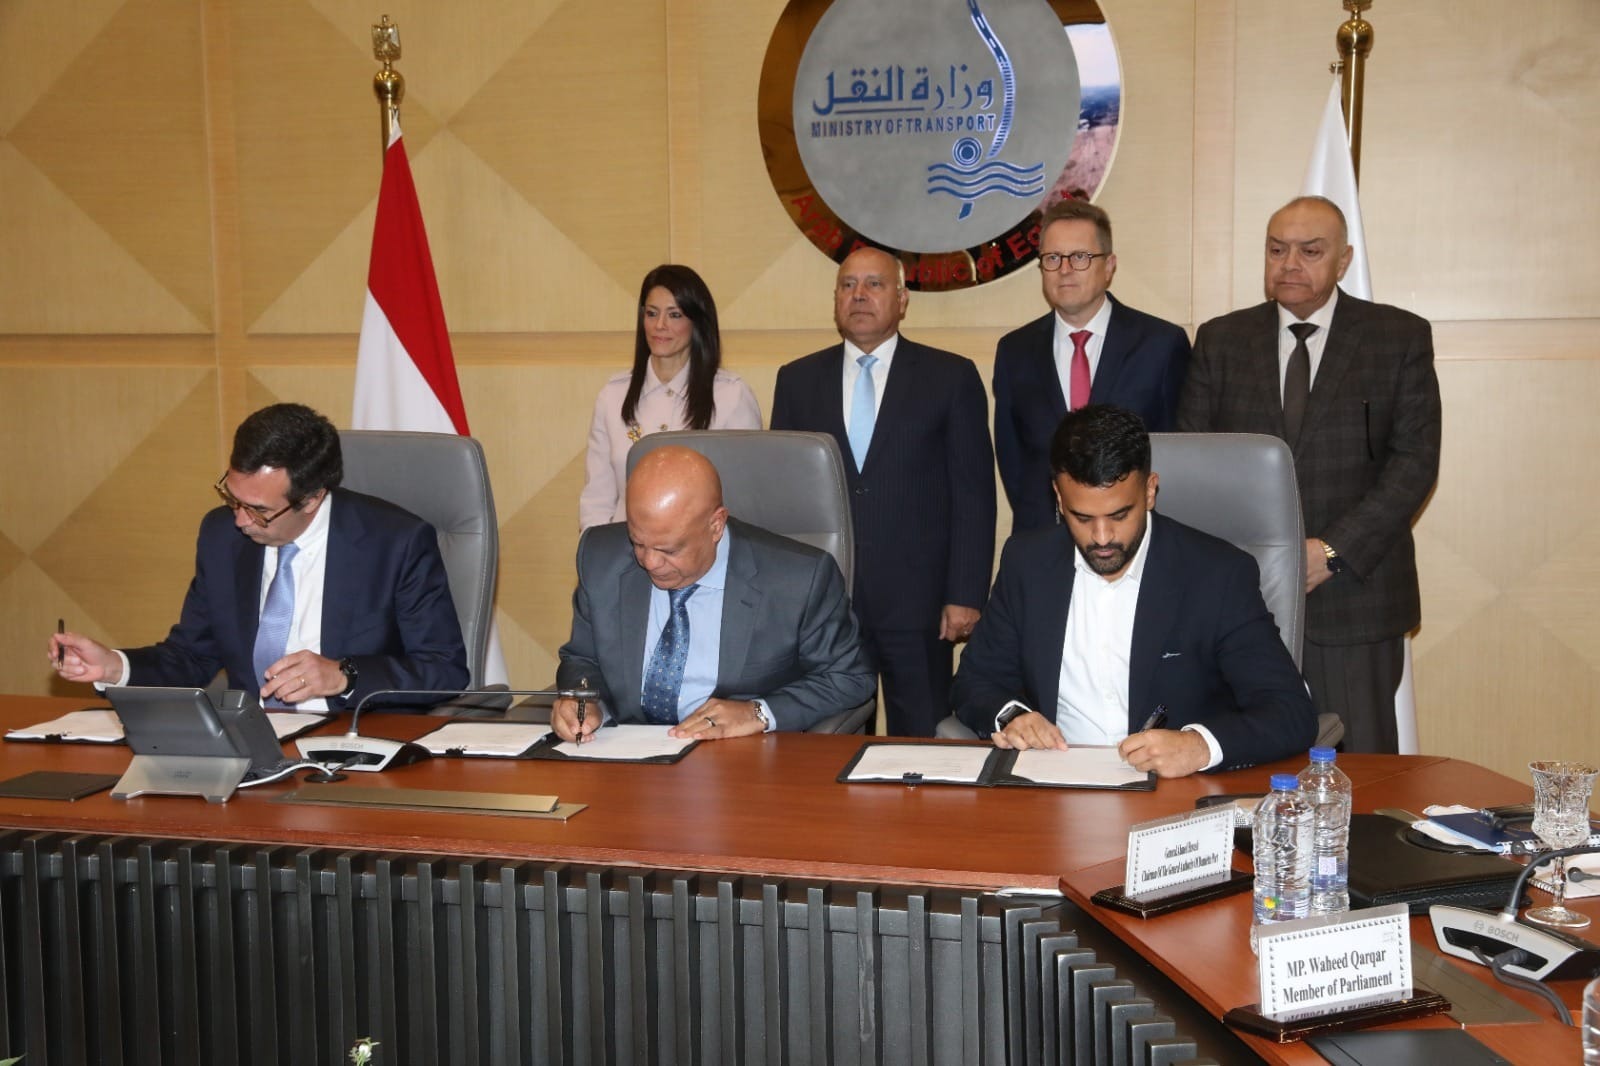 مصر توقع اتفاقية لتوفير التمويل لبناء محطة تحيا مصر 1 بميناء دمياط